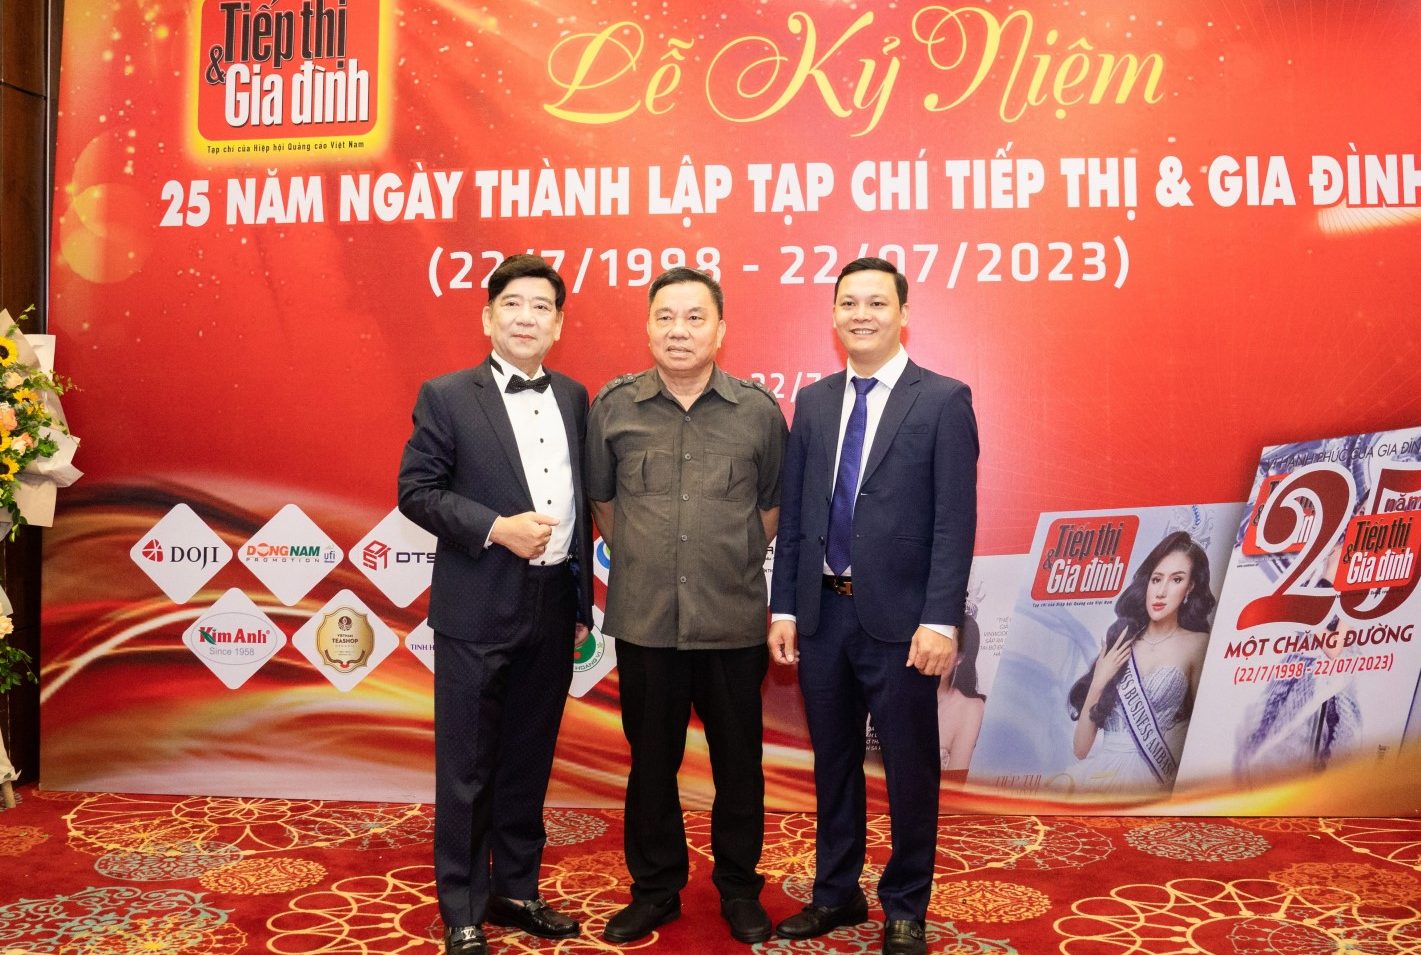 Nguyên Thứ trưởng Bộ VHTT Đỗ Quý Doãn (giữa), Chủ tịch Hiệp hội Quảng cáo Việt Nam Nguyễn Trường Sơn (bìa trái) và TBT Tiếp thị & Gia đình.